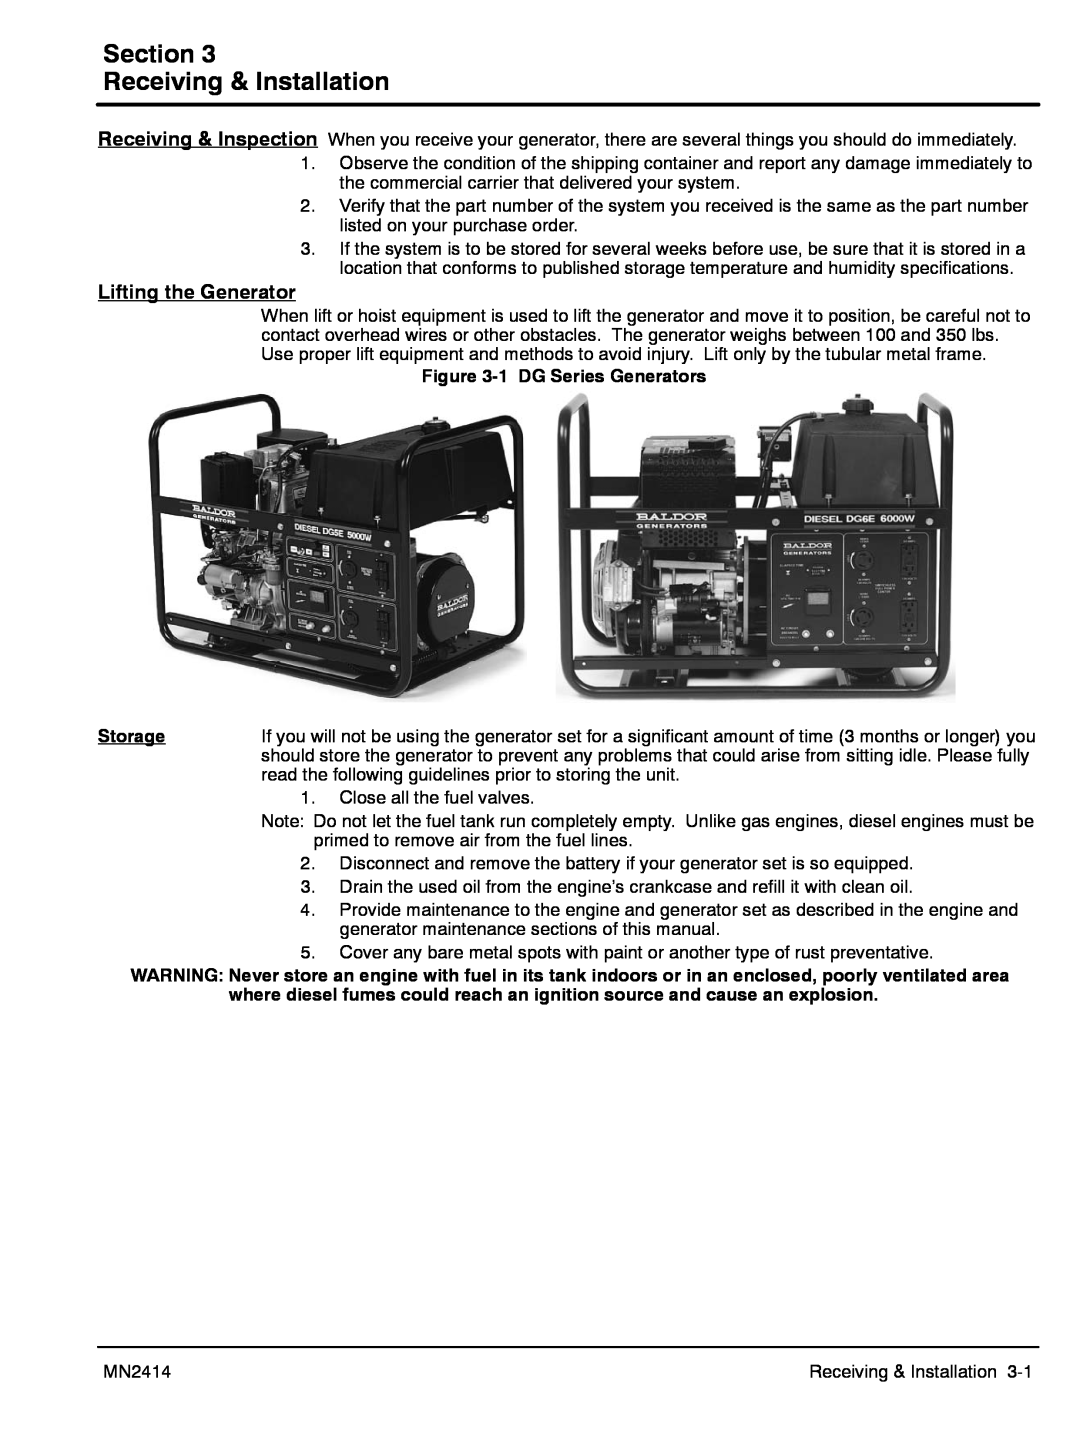 Baldor DG6E, DG3E manual Section Receiving & Installation, Lifting the Generator 